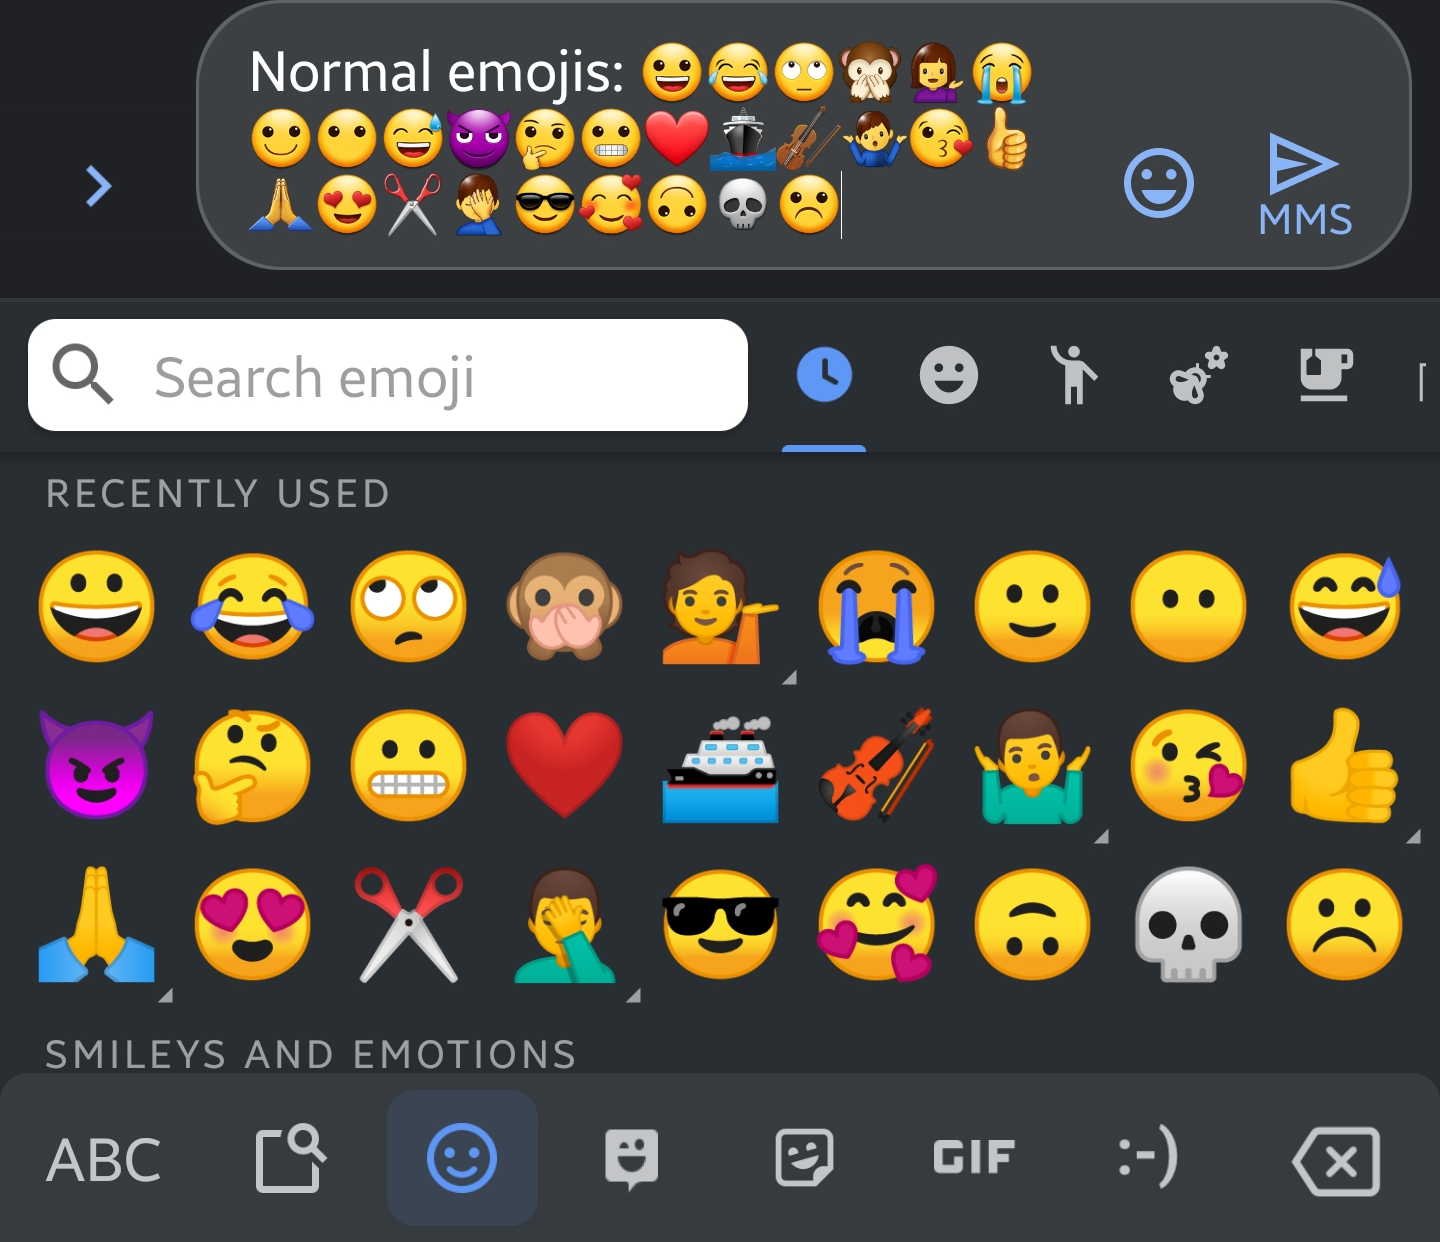 samsung galaxy 4 emoji keyboard